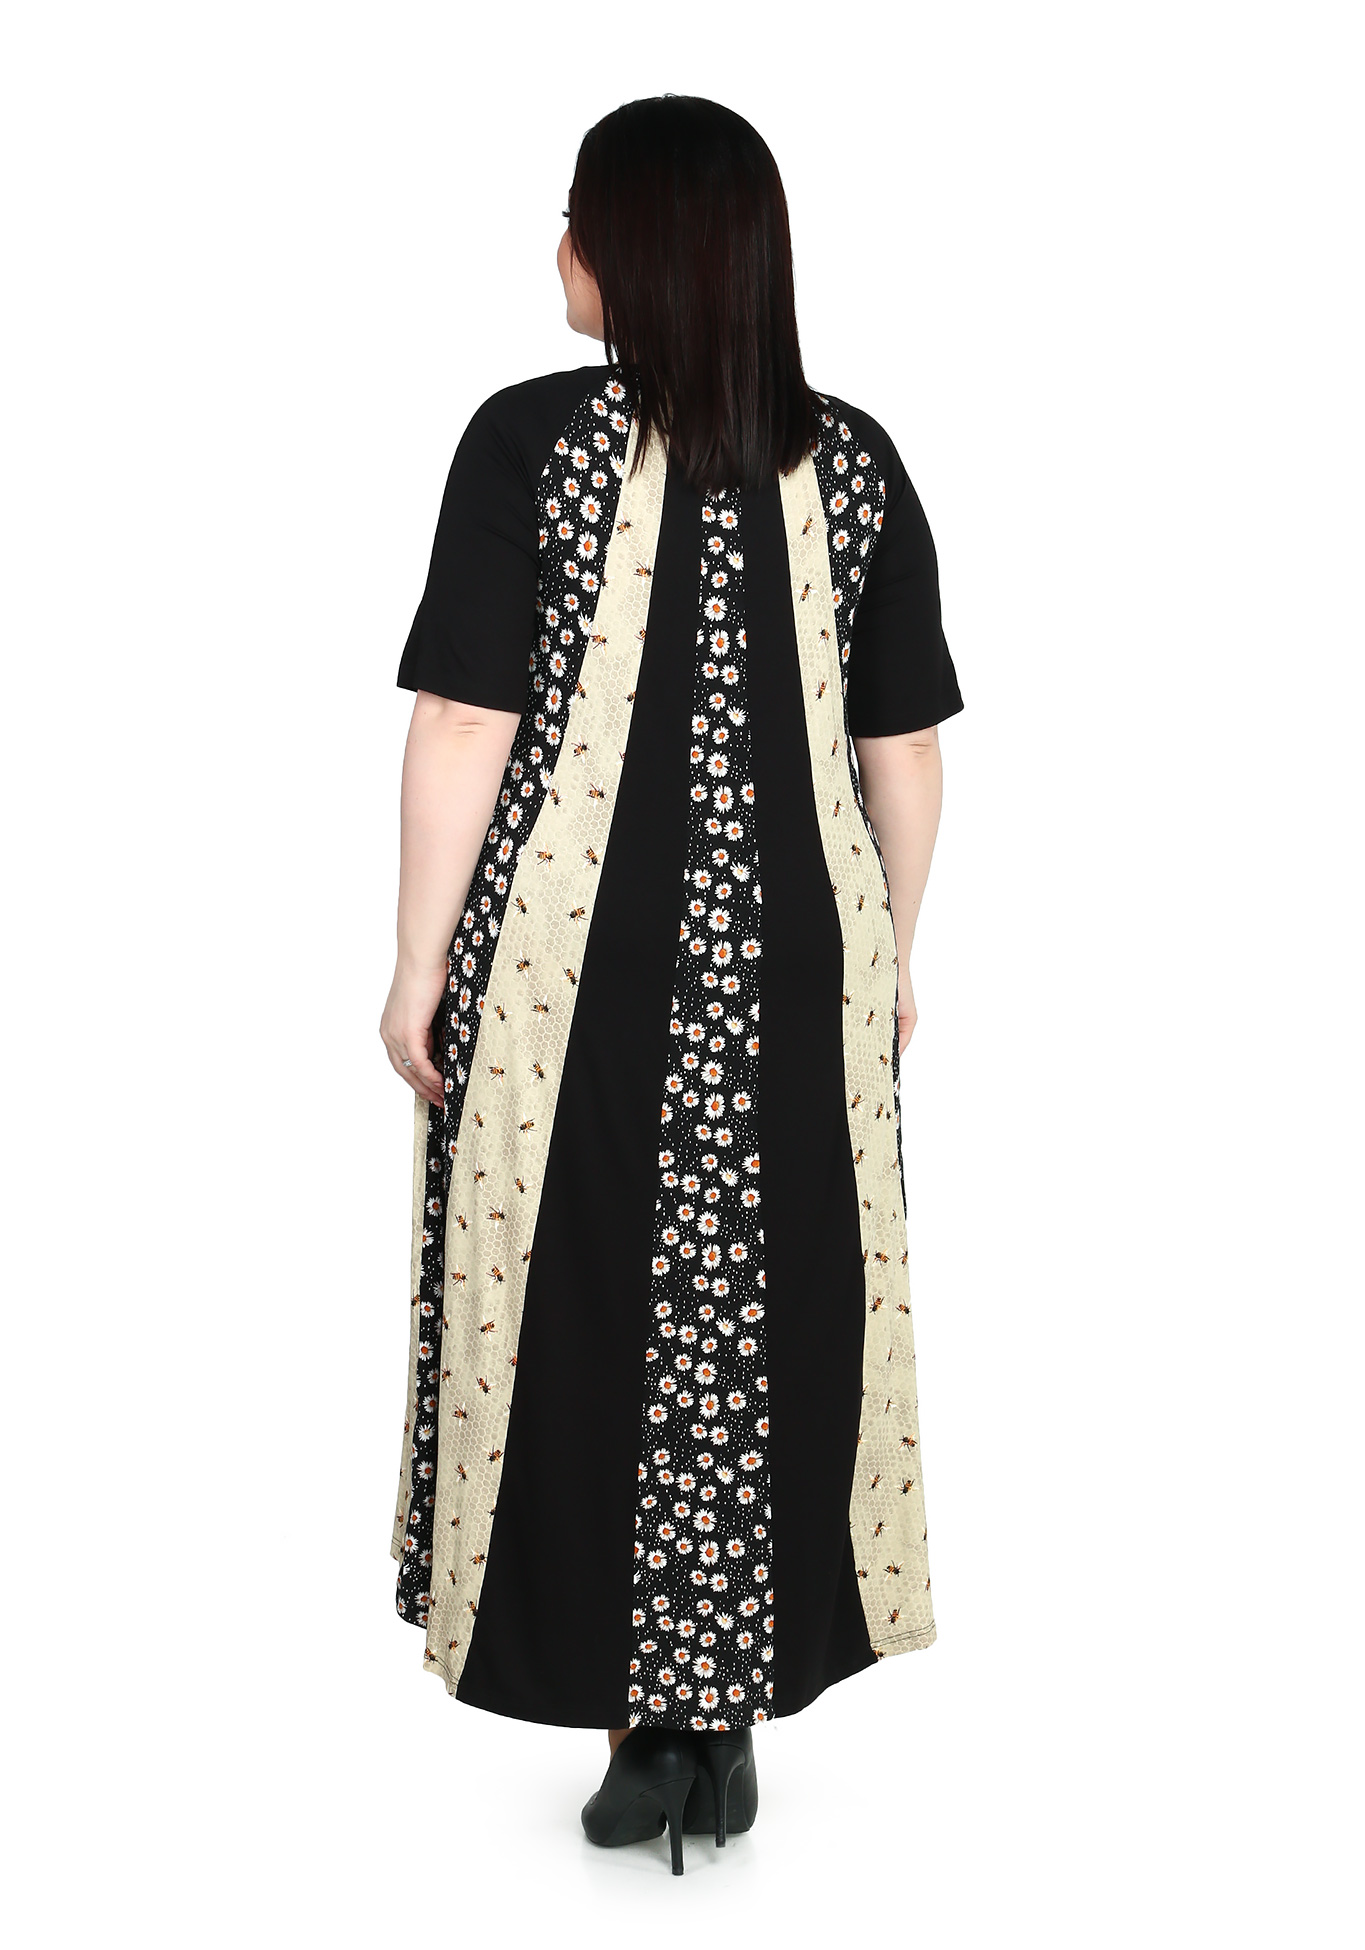 Платье-макси с комбинированным принтом Averi, размер 50, цвет черно-бежевый - фото 3